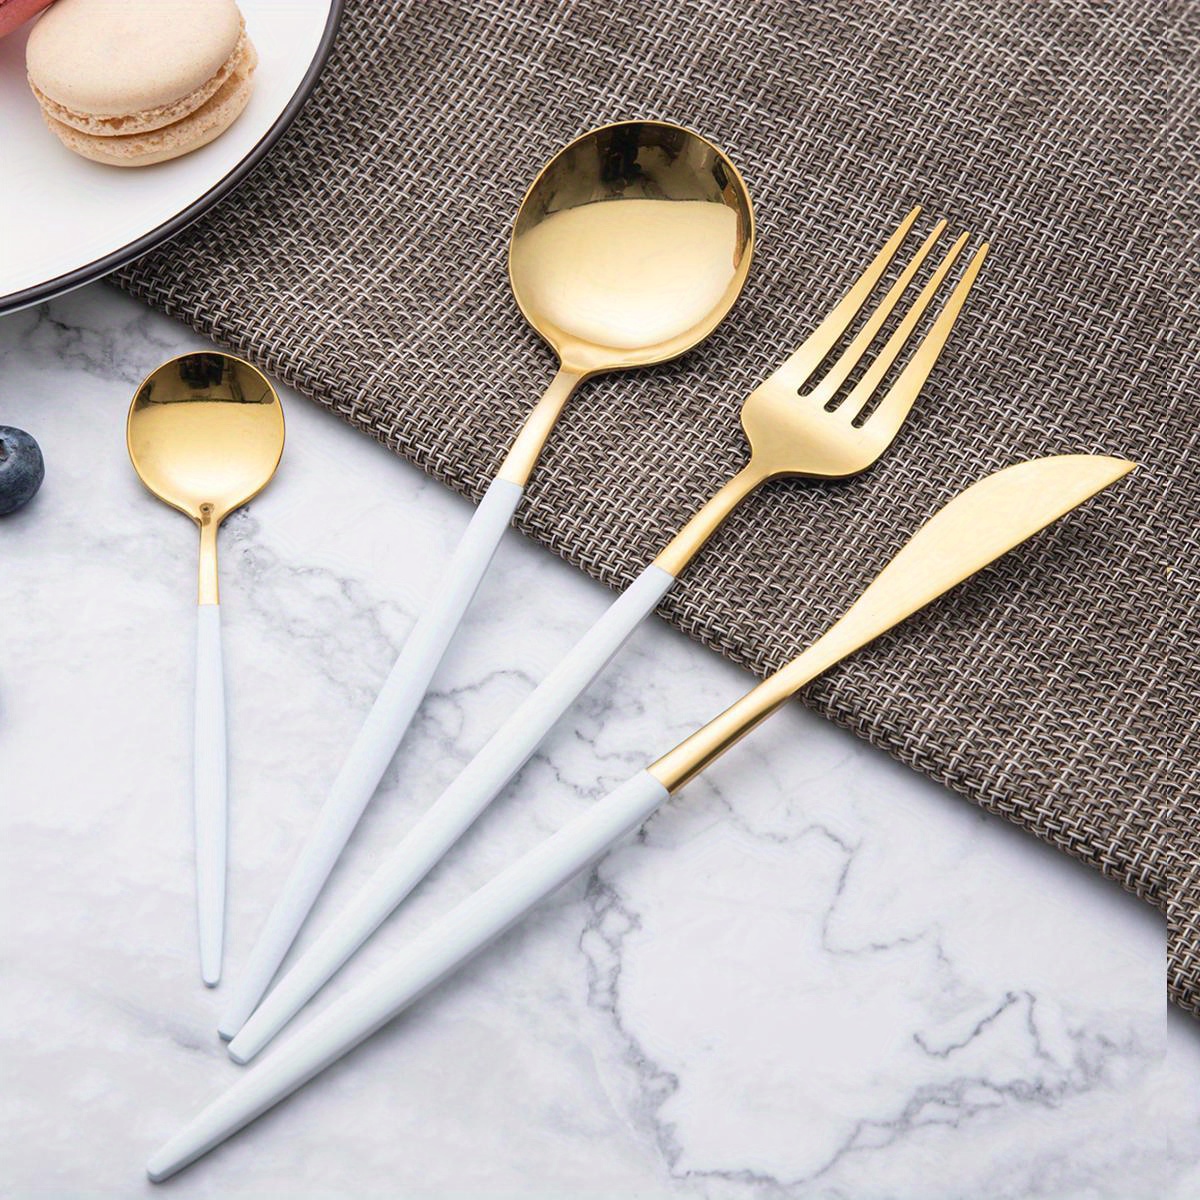 Cutlery, Silverware Set, Coffee Spoon, Salad Fork, Steak Dinner